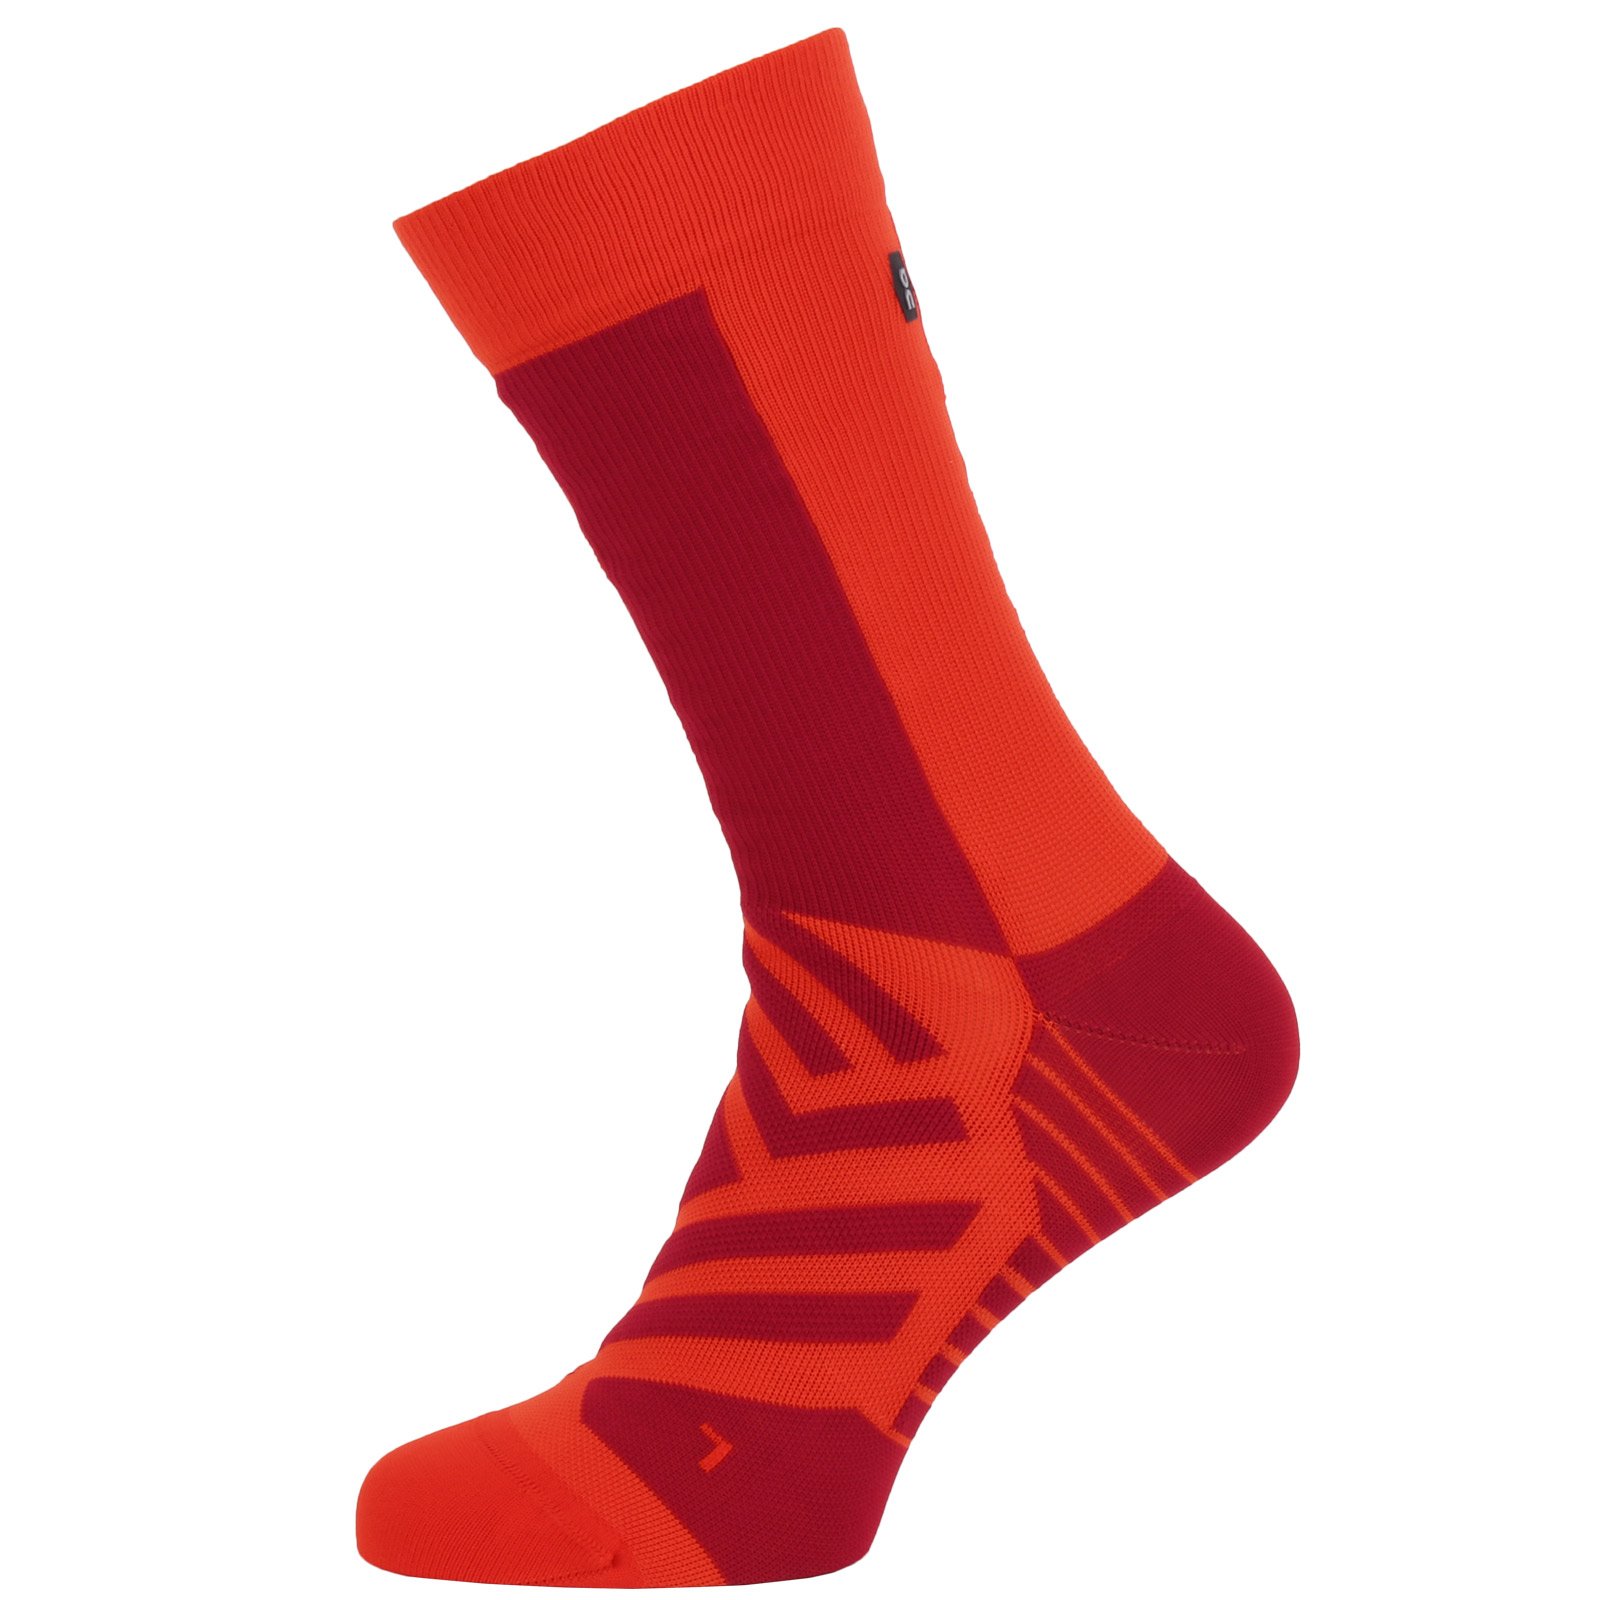 Produktbild von On Performance High Sock - Damen Laufsocken - Chili &amp; Spice